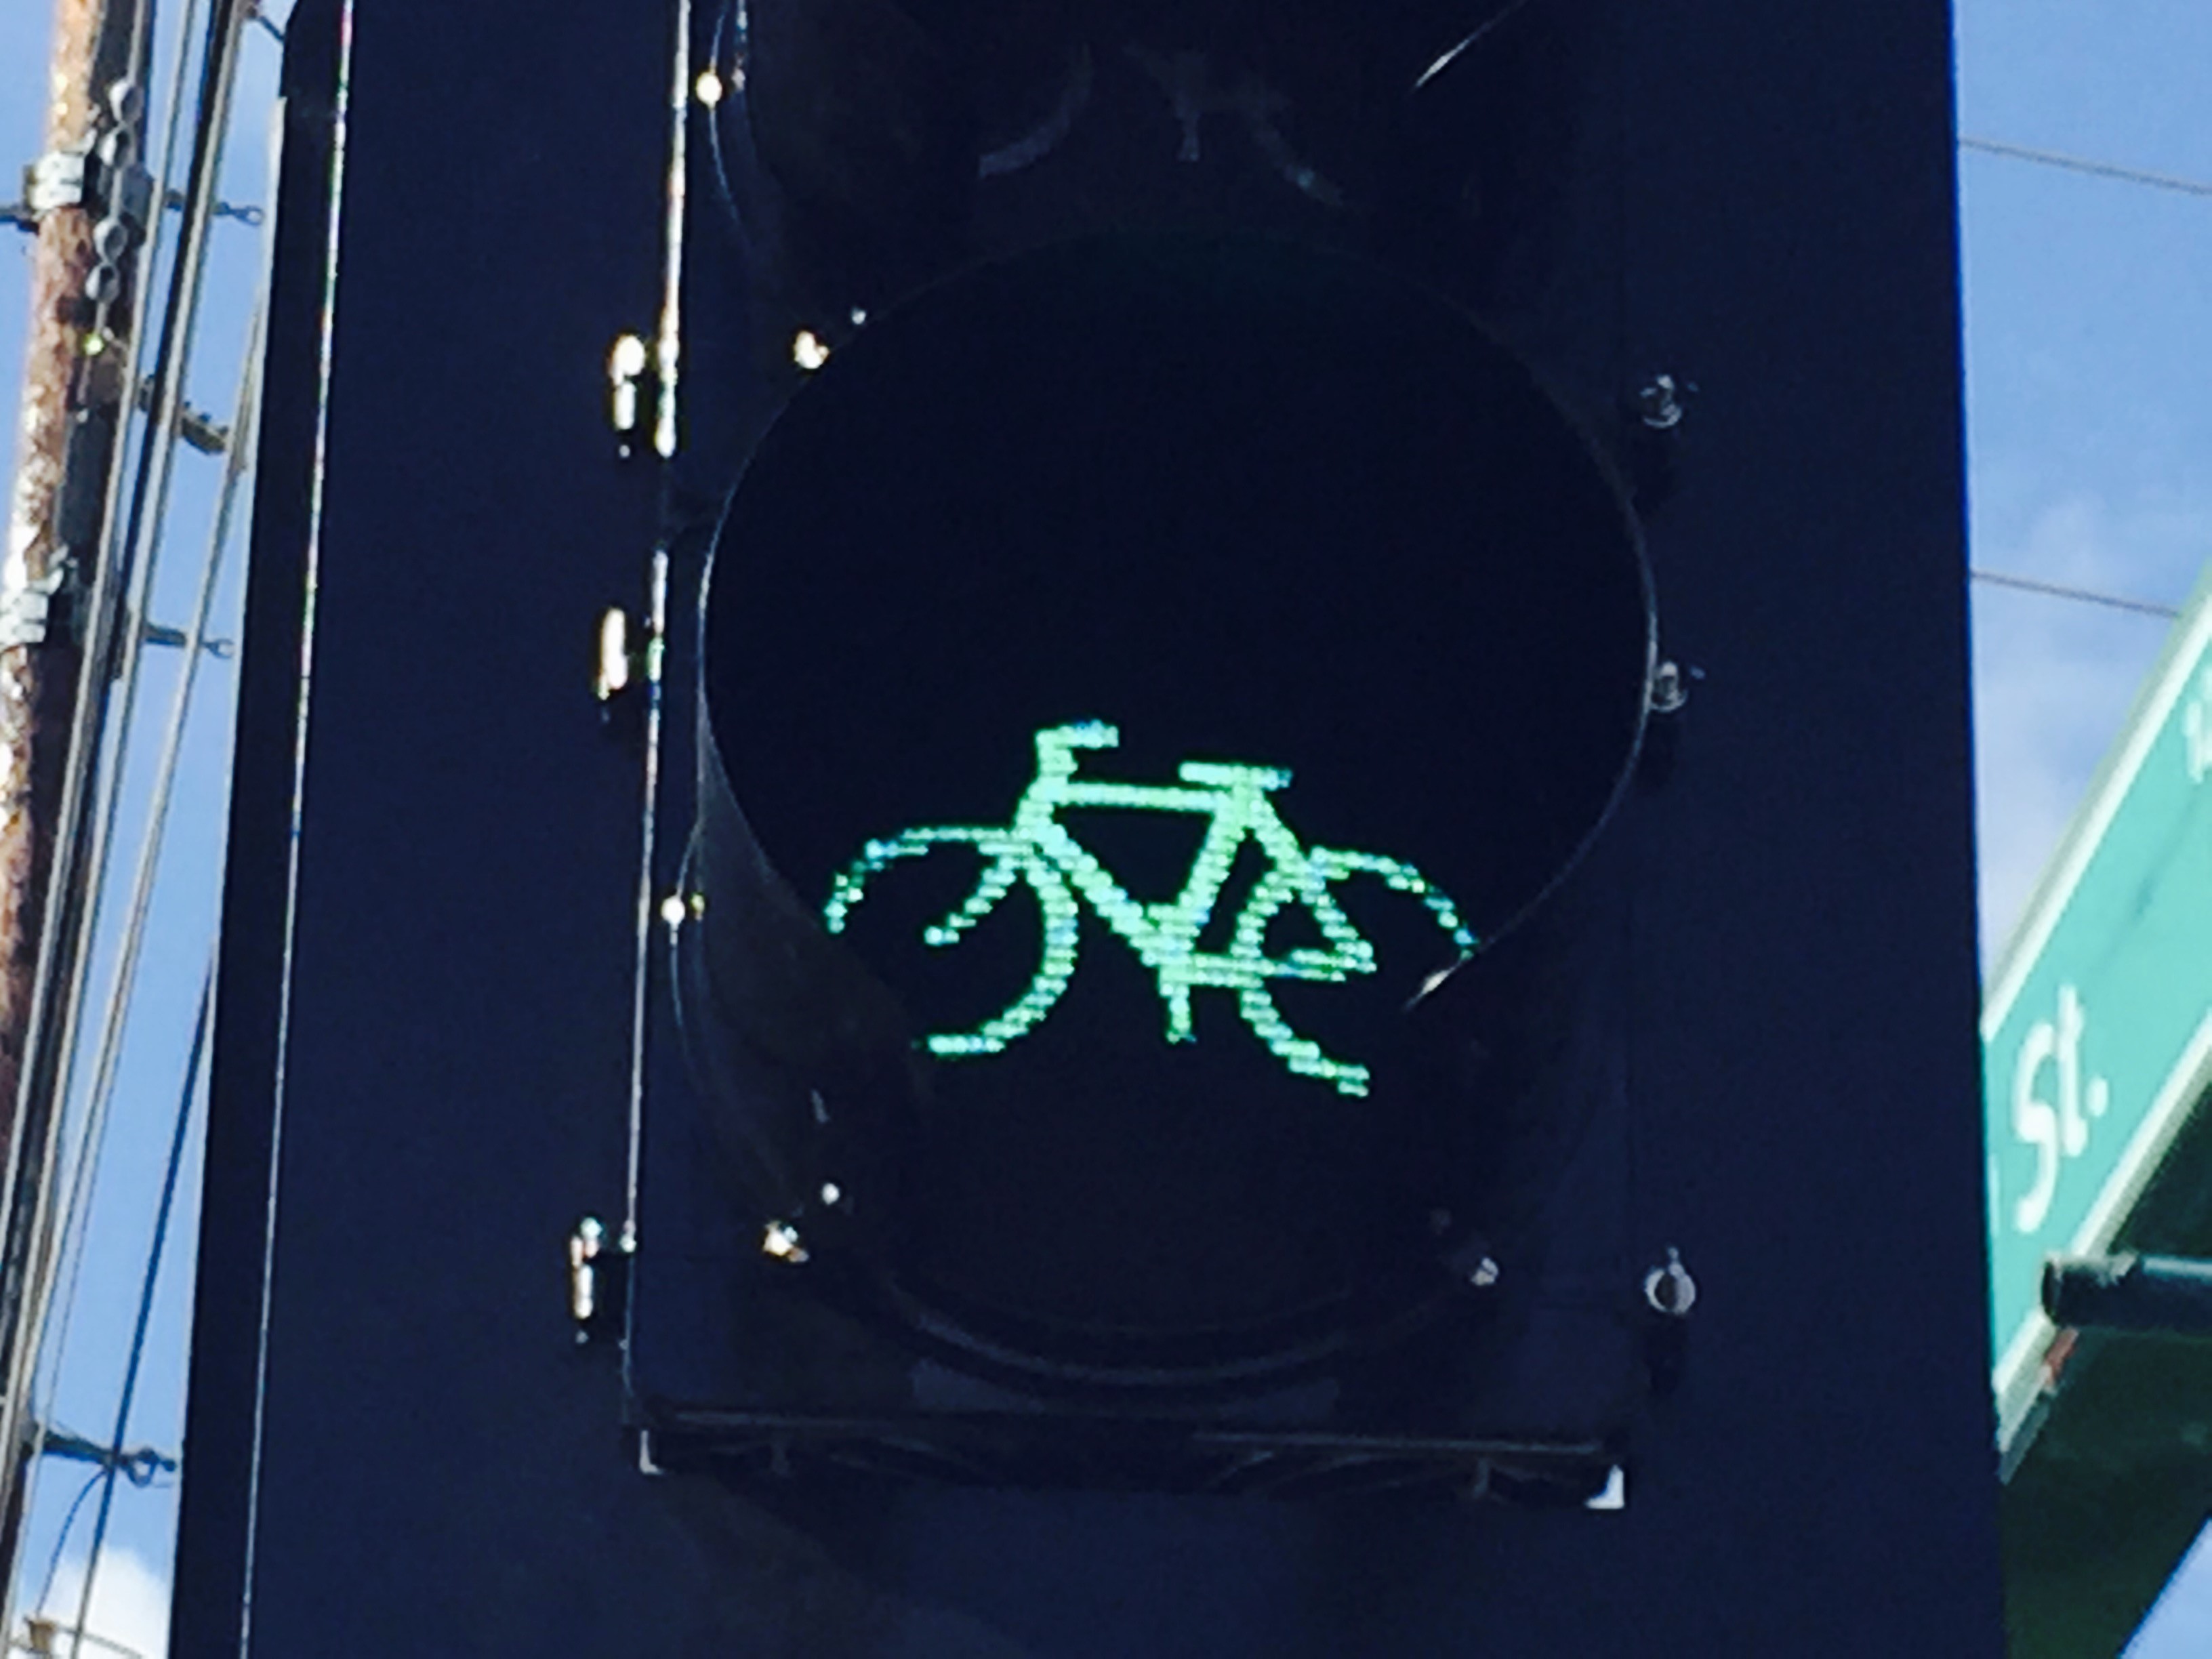 Bike signal